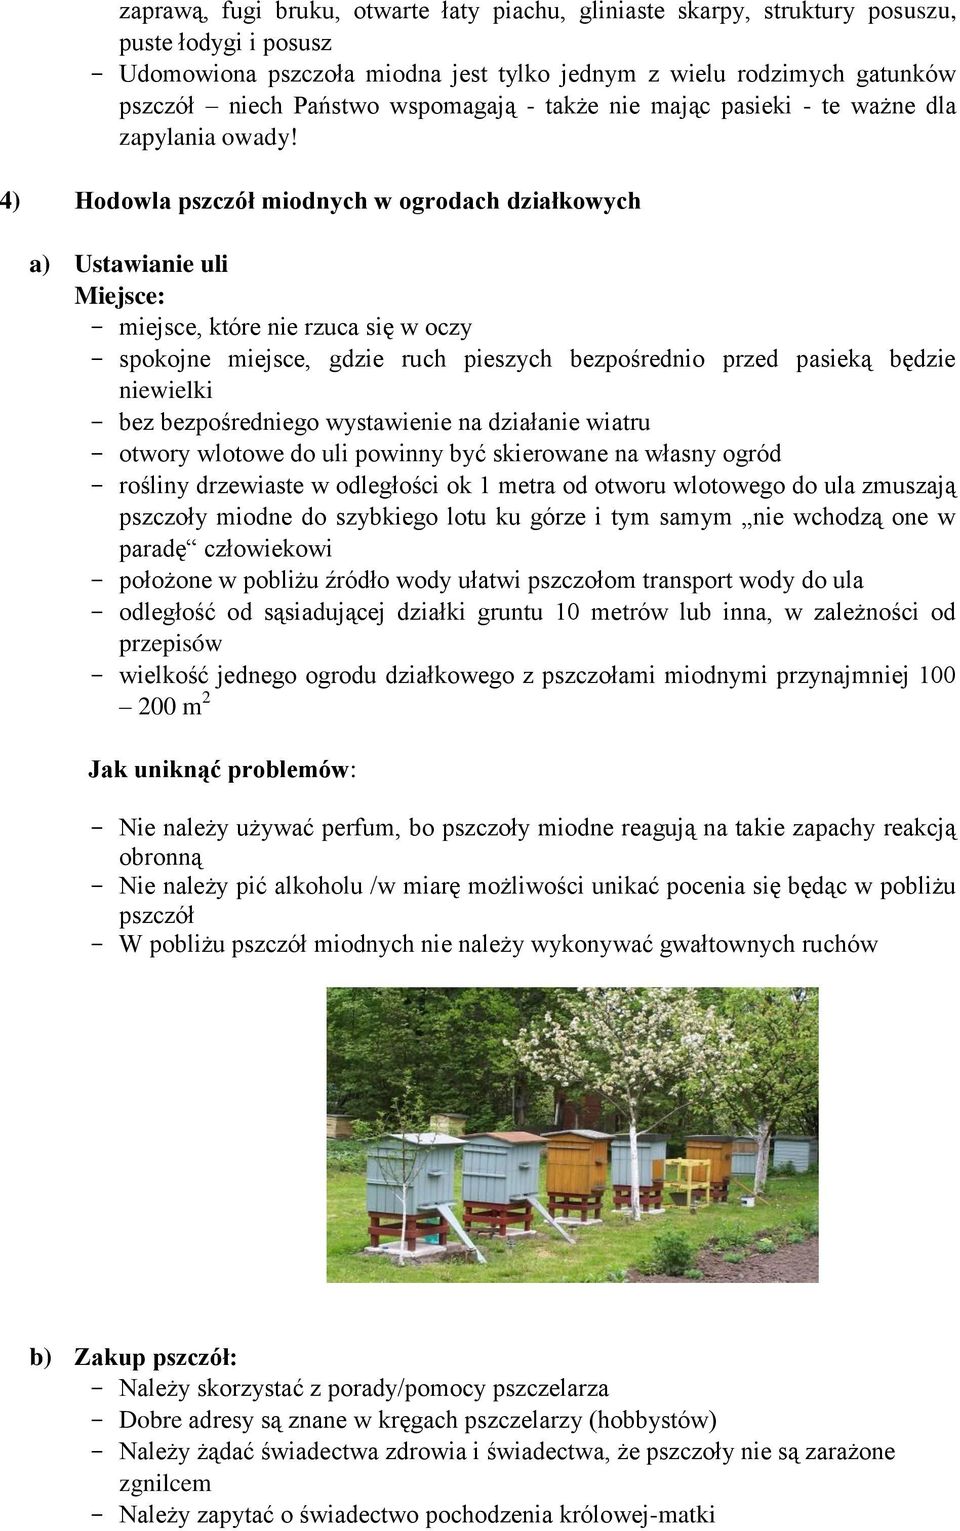 4) Hodowla pszczół miodnych w ogrodach działkowych a) Ustawianie uli Miejsce: - miejsce, które nie rzuca się w oczy - spokojne miejsce, gdzie ruch pieszych bezpośrednio przed pasieką będzie niewielki